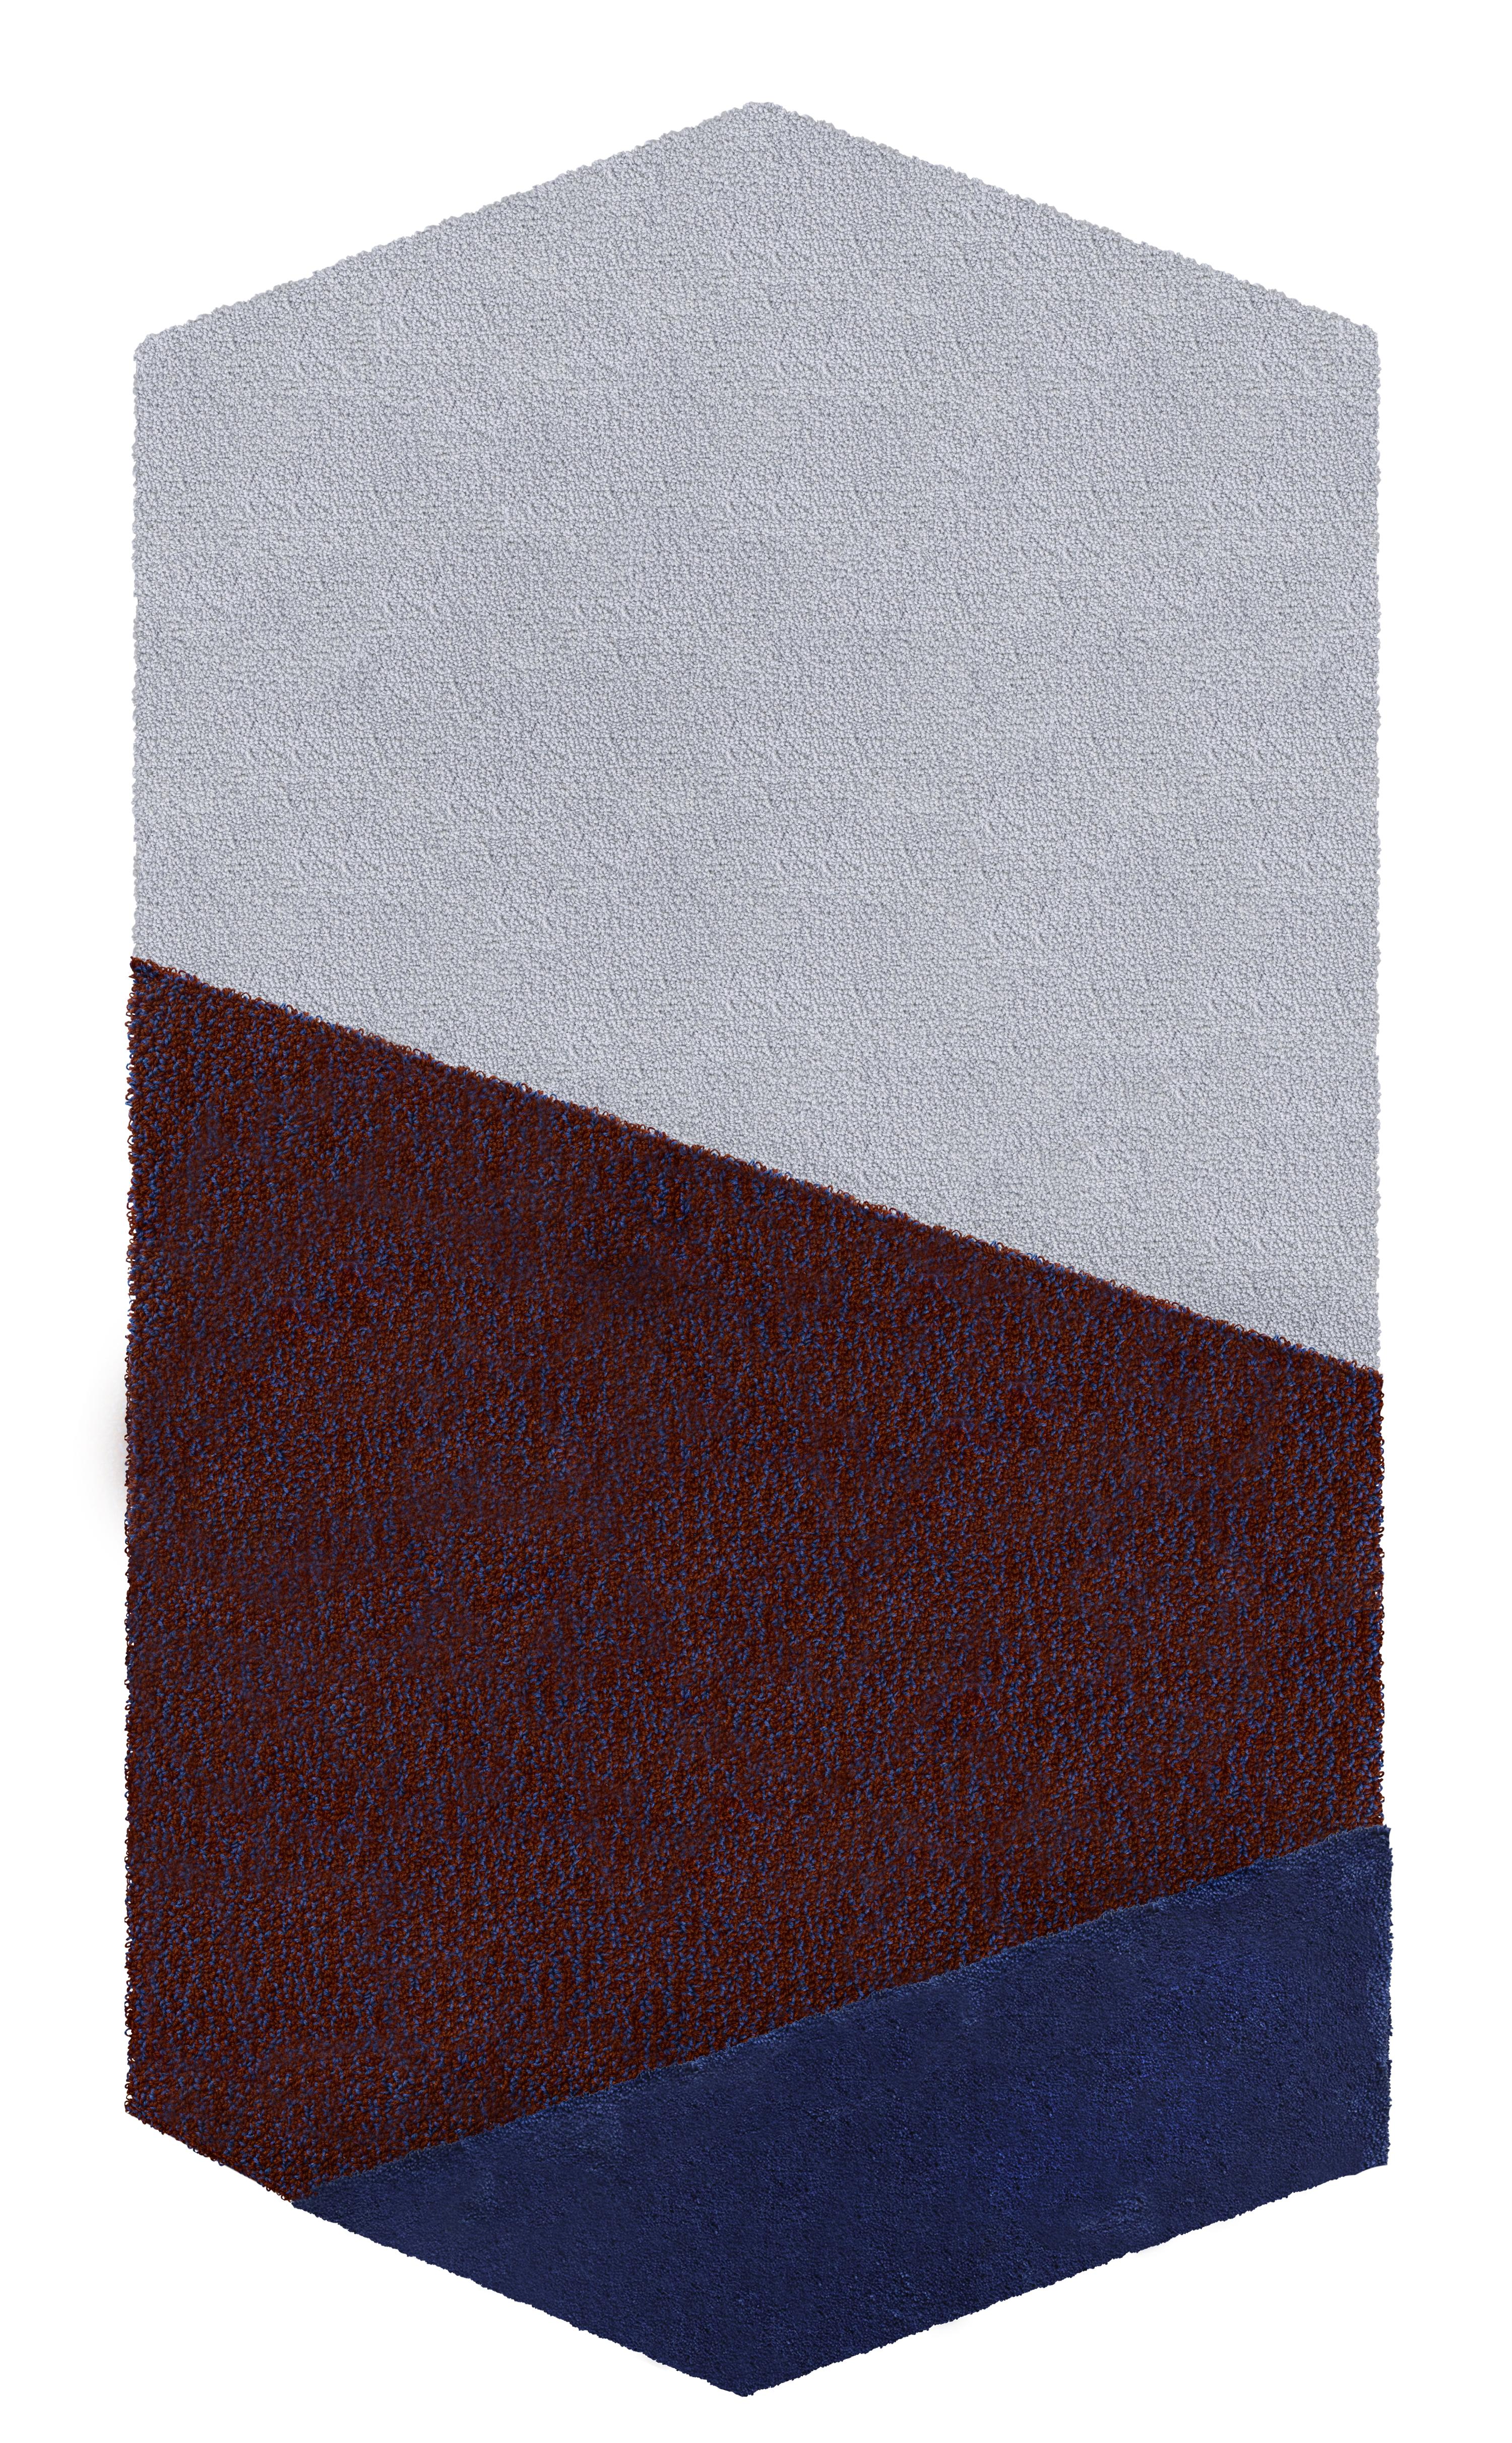 Tapis Oci bleu à gauche de Seraina Lareida
Dimensions :  L 70 x H 130 cm 
MATERIAL : 100 % laine de première qualité deNew.
Disponible en taille moyenne (110x200cm) et grande (150 x 280cm). Également disponible en couleurs : Jaune/Gris, Brique/Rose,